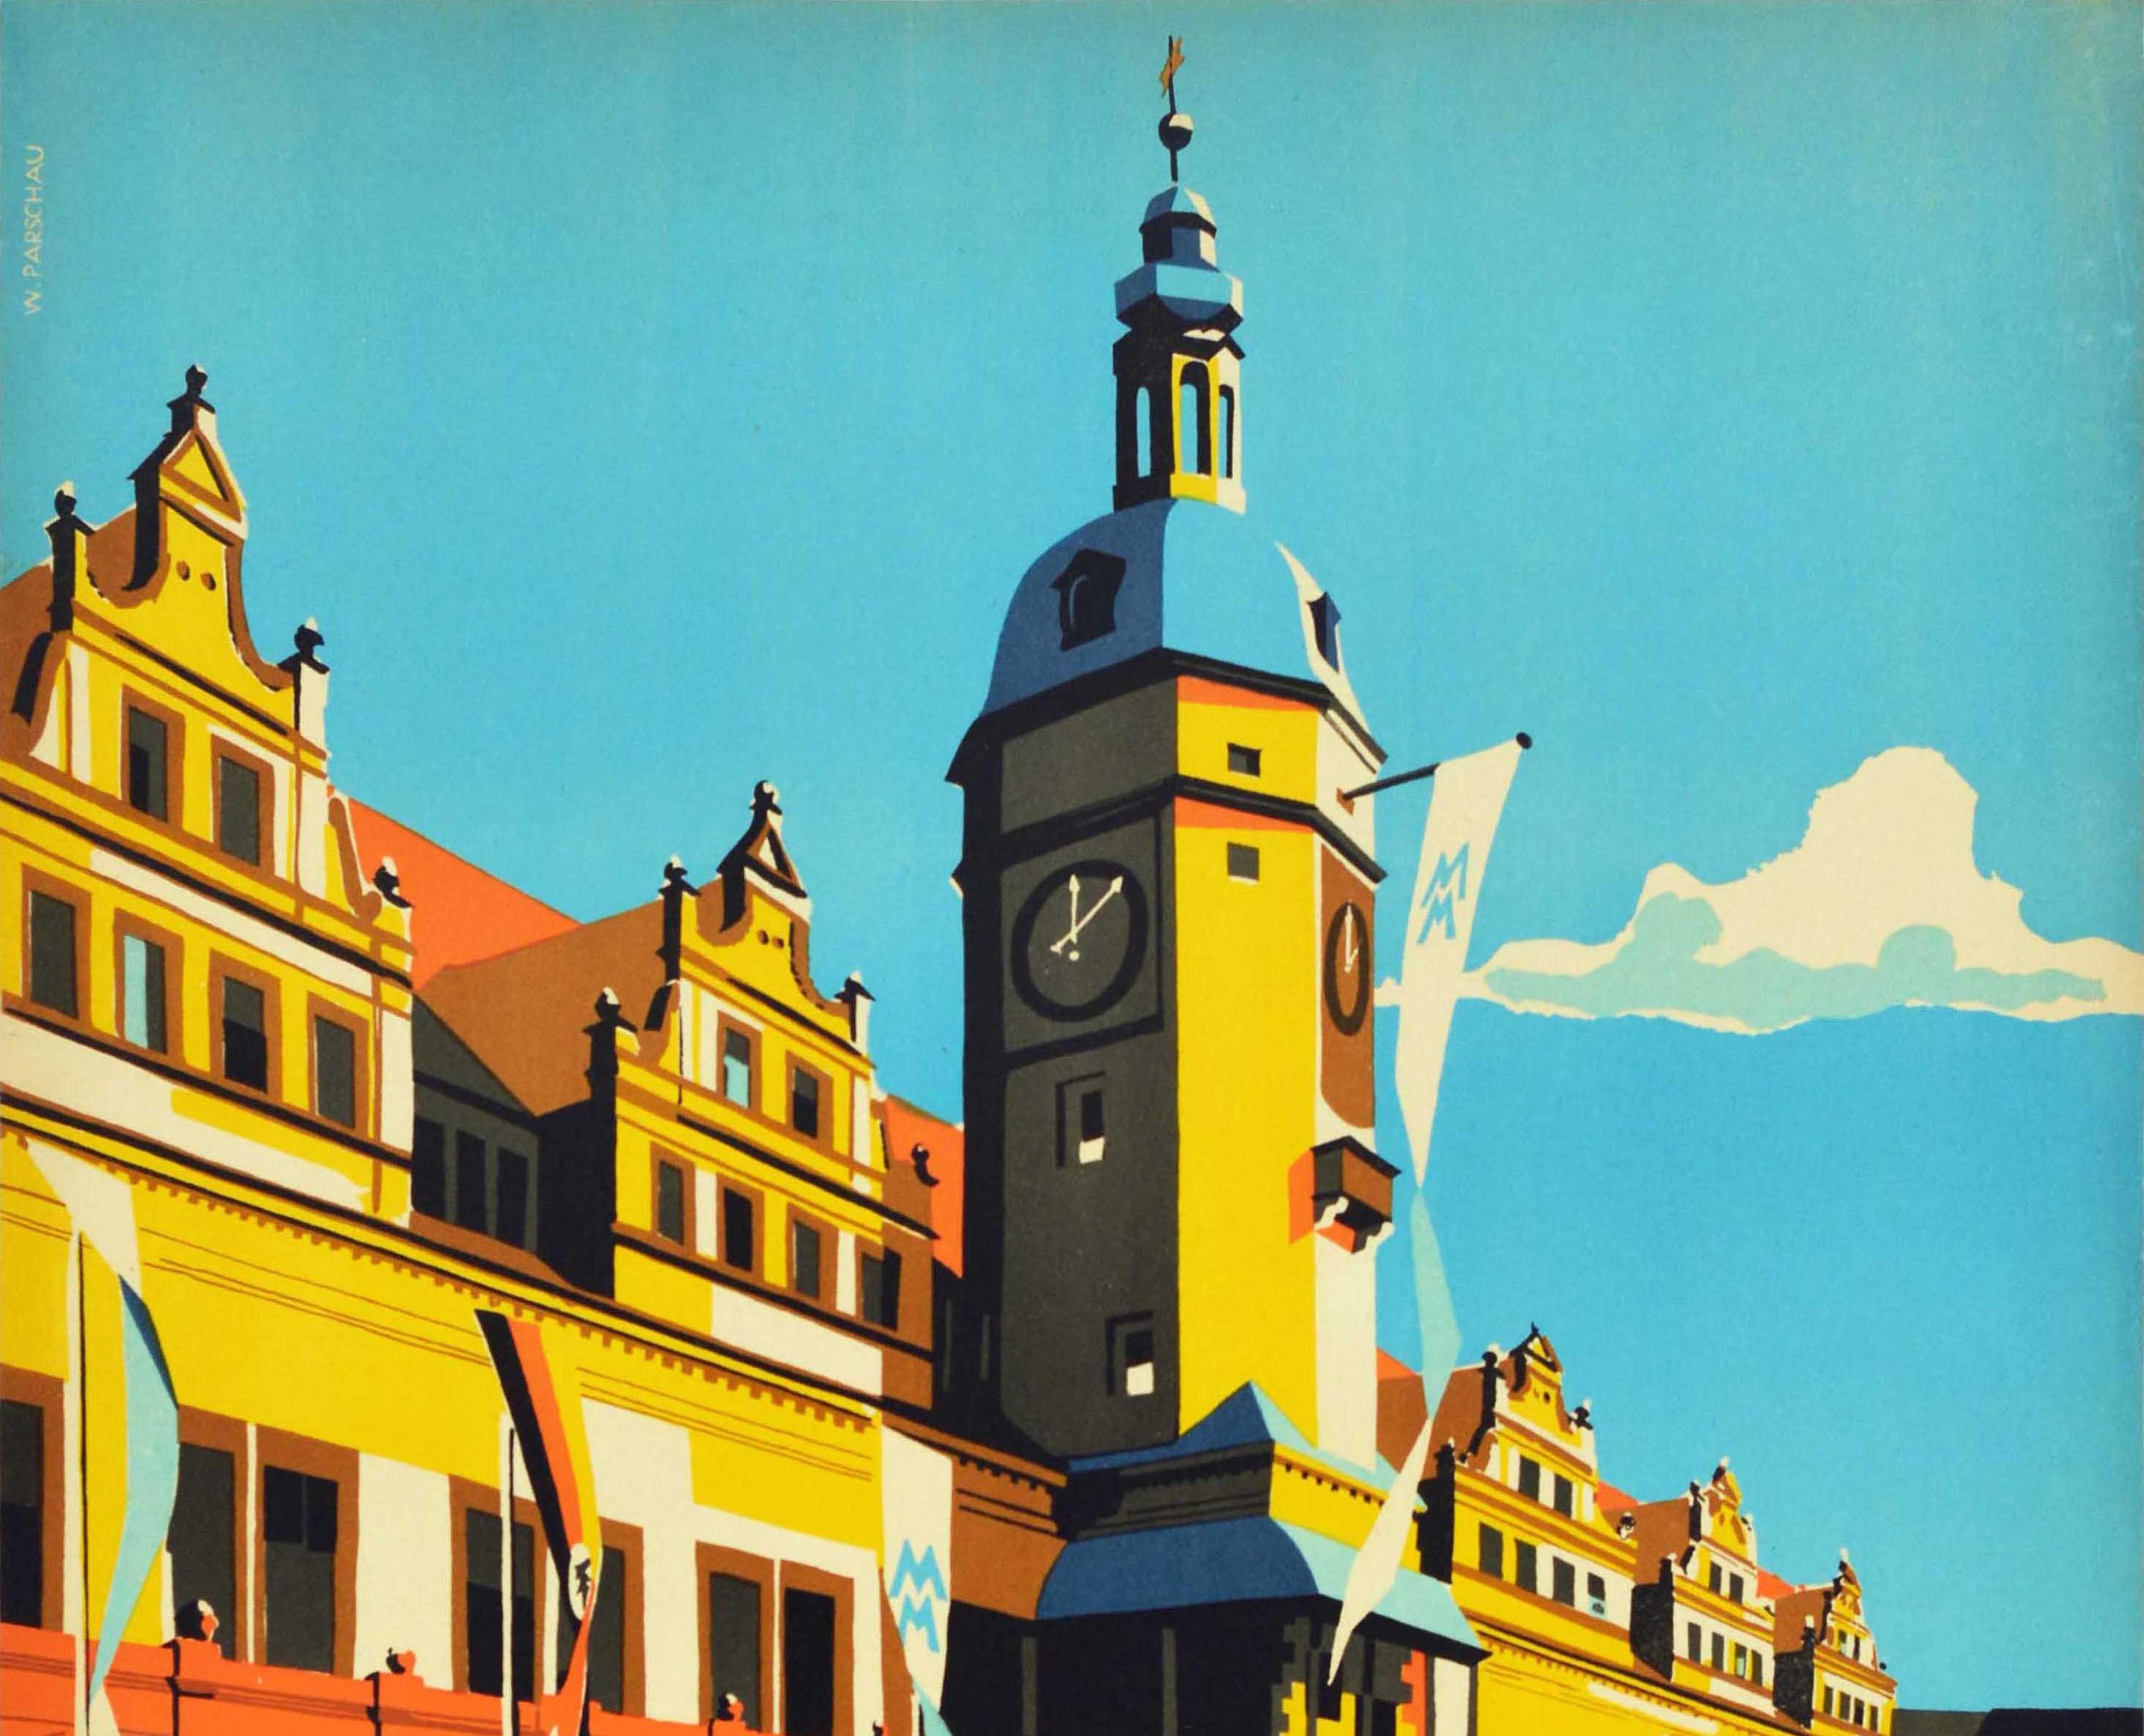 Affiche de voyage vintage originale pour la foire commerciale de Leipzig. L'image colorée représente des personnes marchant vers la foire entre des voitures garées au premier plan, avec des drapeaux de l'événement portant les initiales bleues MM et